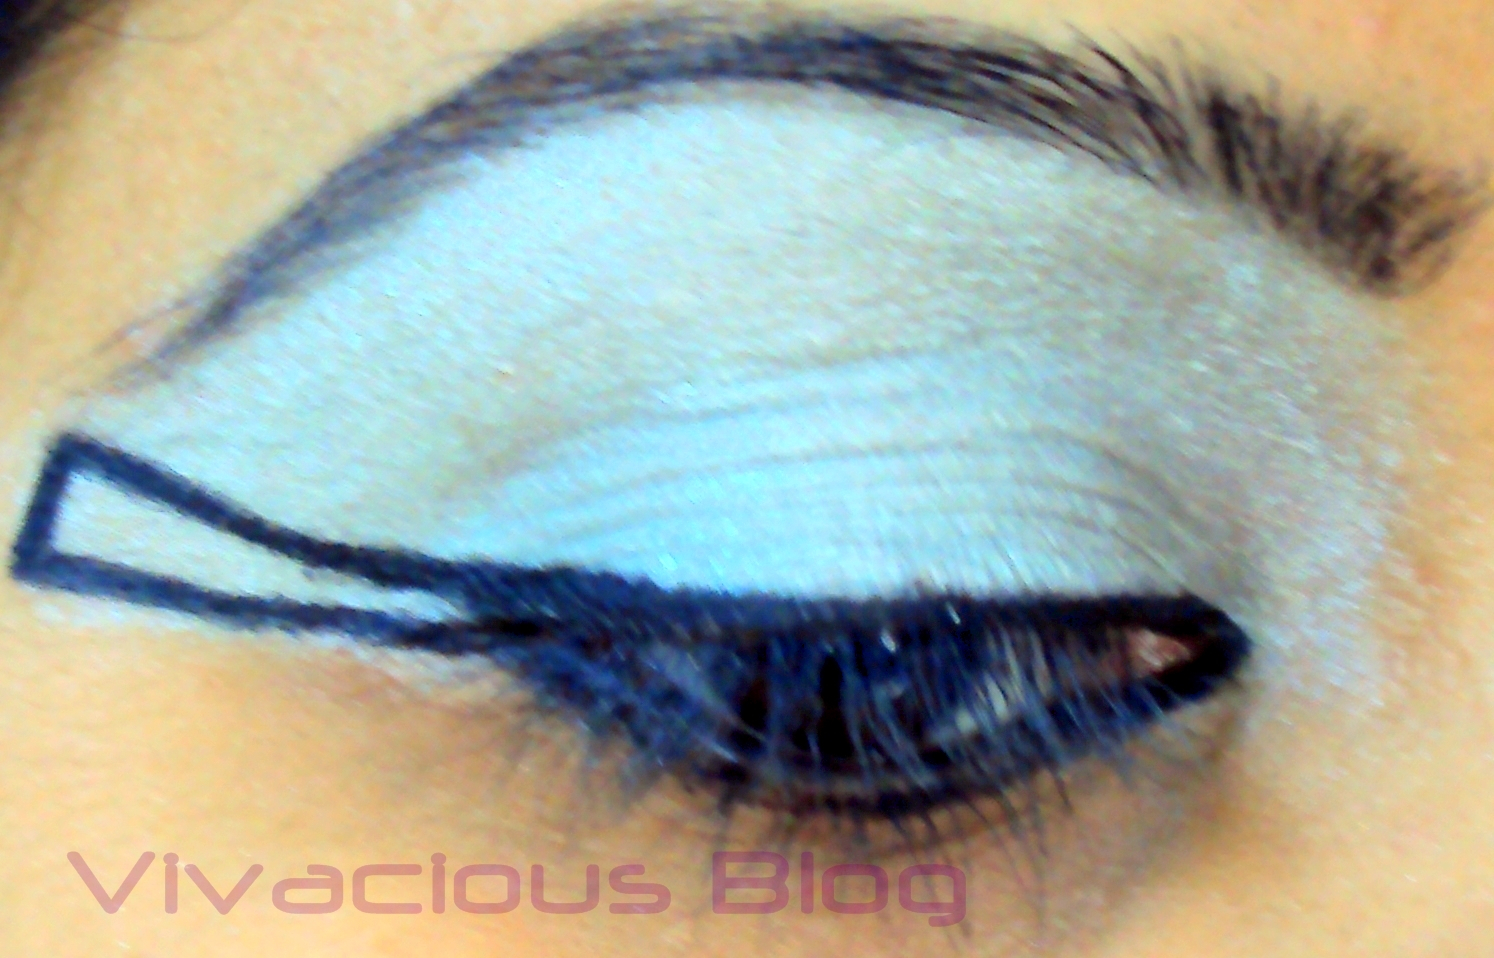 Cleopatra Eye Makeup Vivacious Blog Cleopatra Eye Makeup